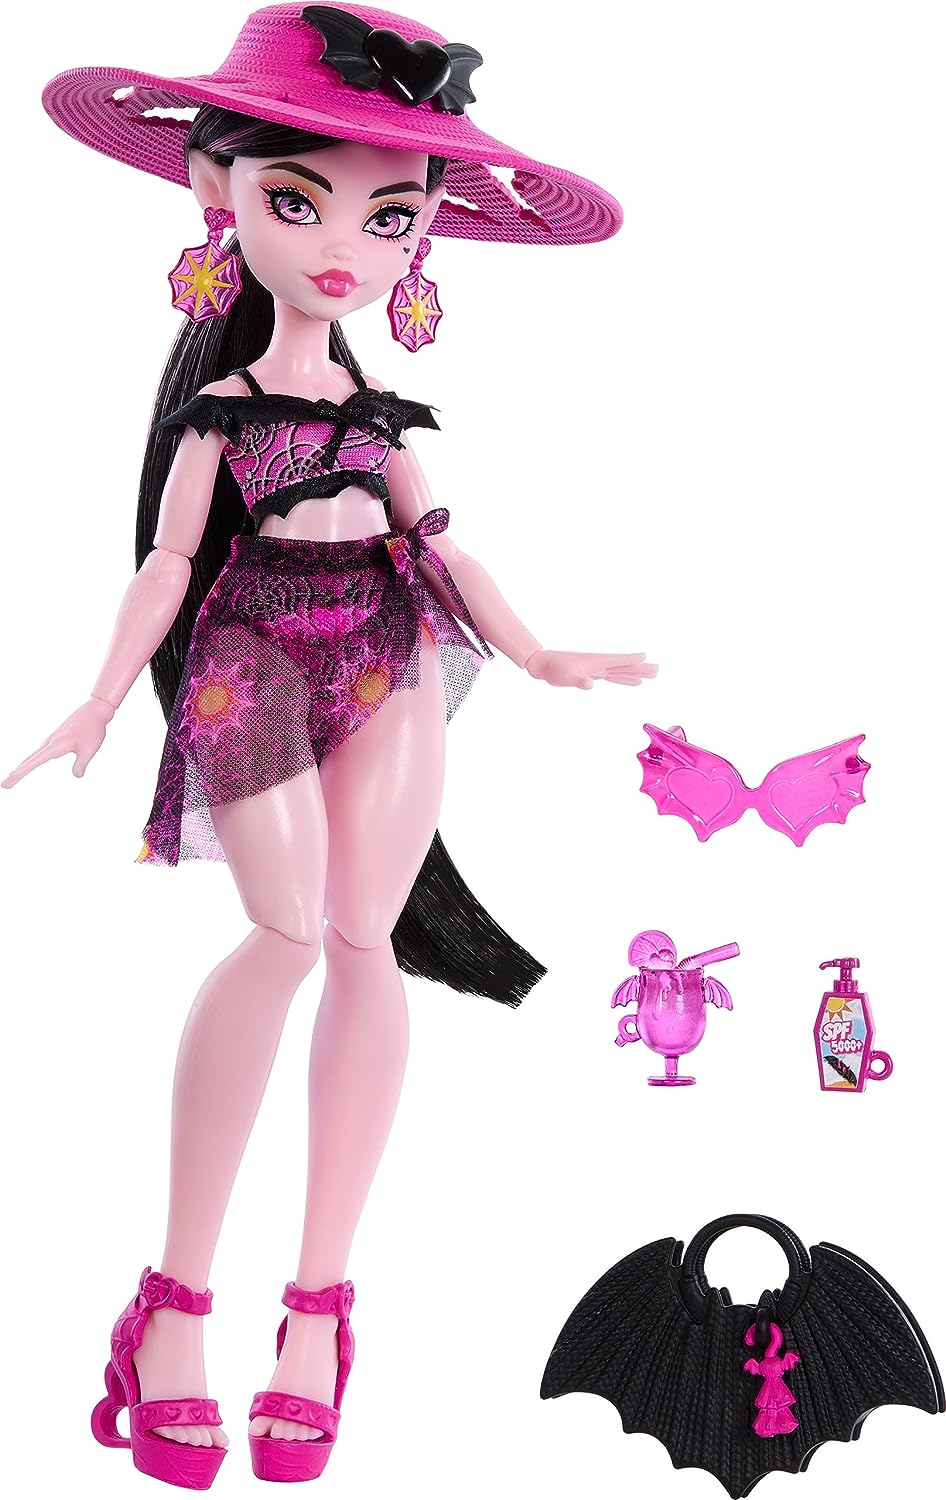 Monster High Scare-adice Island dolls - Draculaura, Clawdeen Wolf